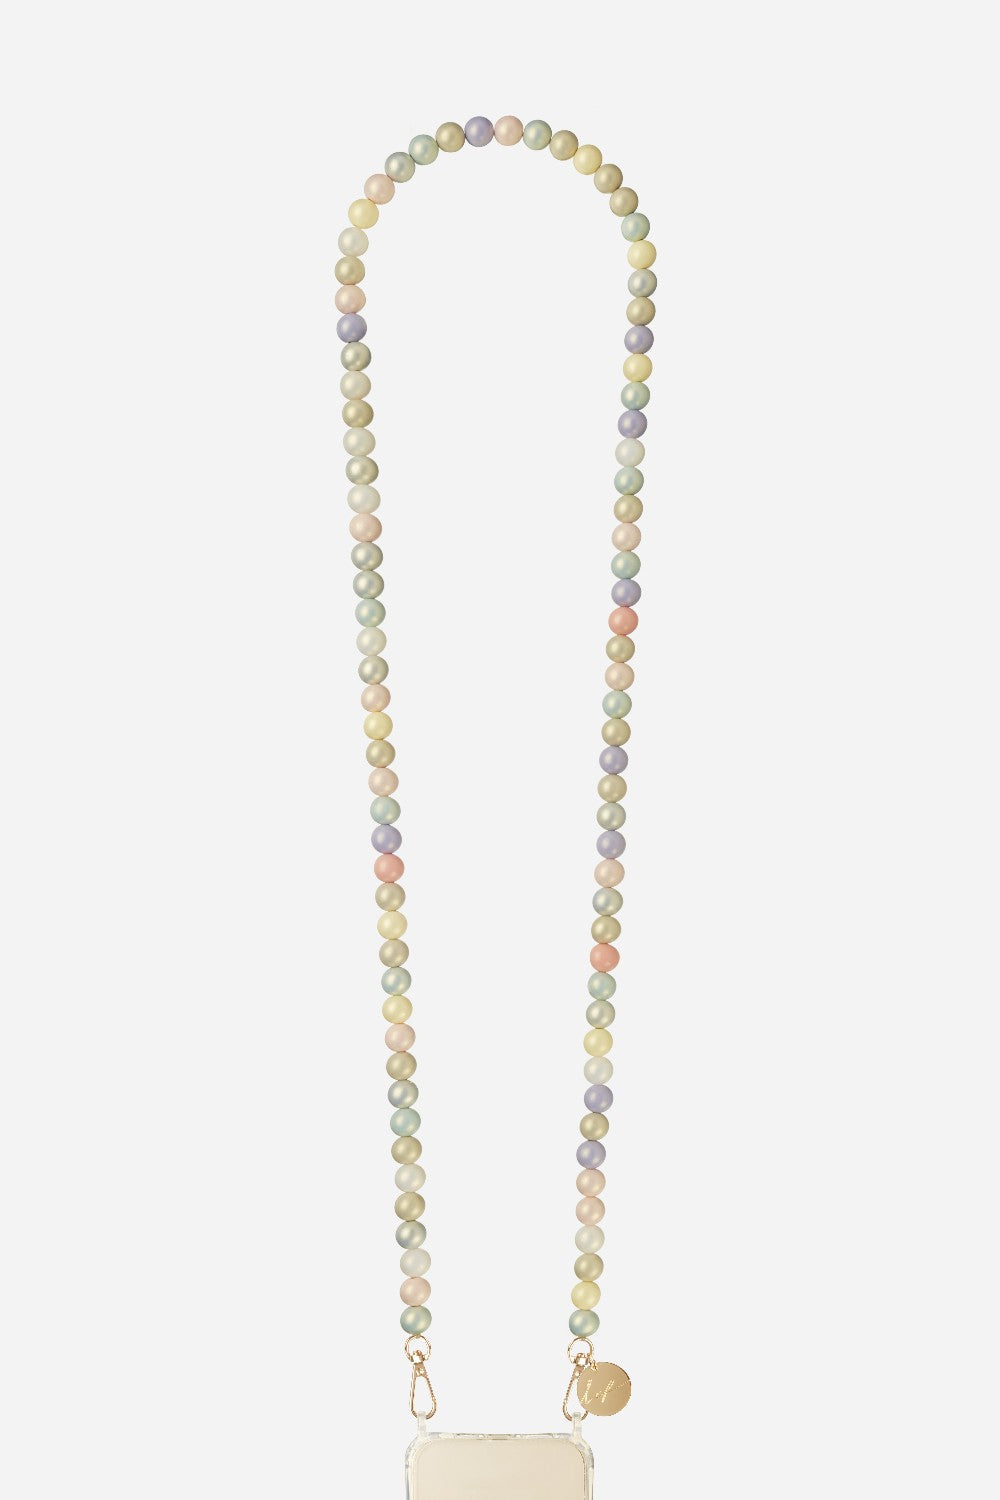 Chaine Longue Ilana Pastelle 120 cm